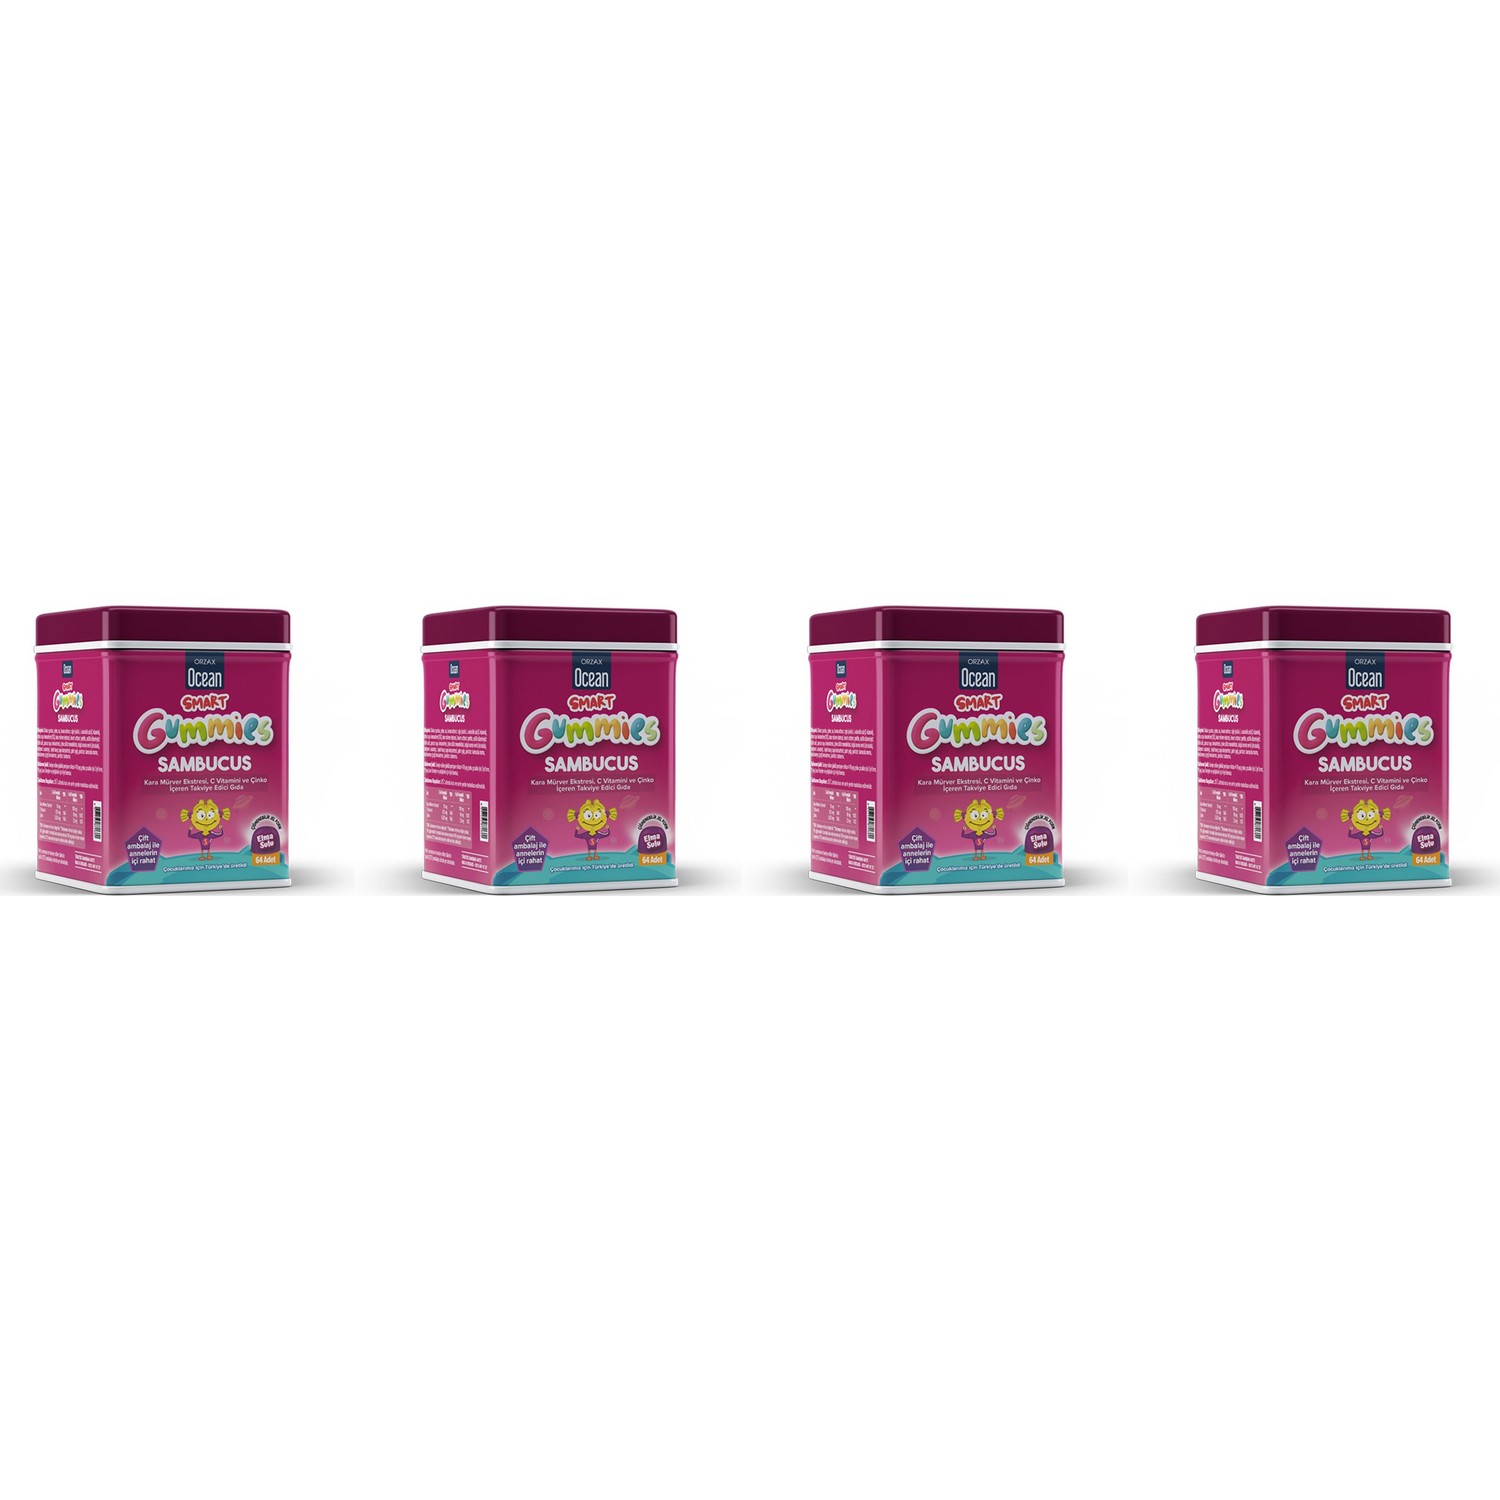 Мультивитамины Orzax Smart Gummies Sambucus, 4 упаковки по 64 таблетки бузина блэк бьюти